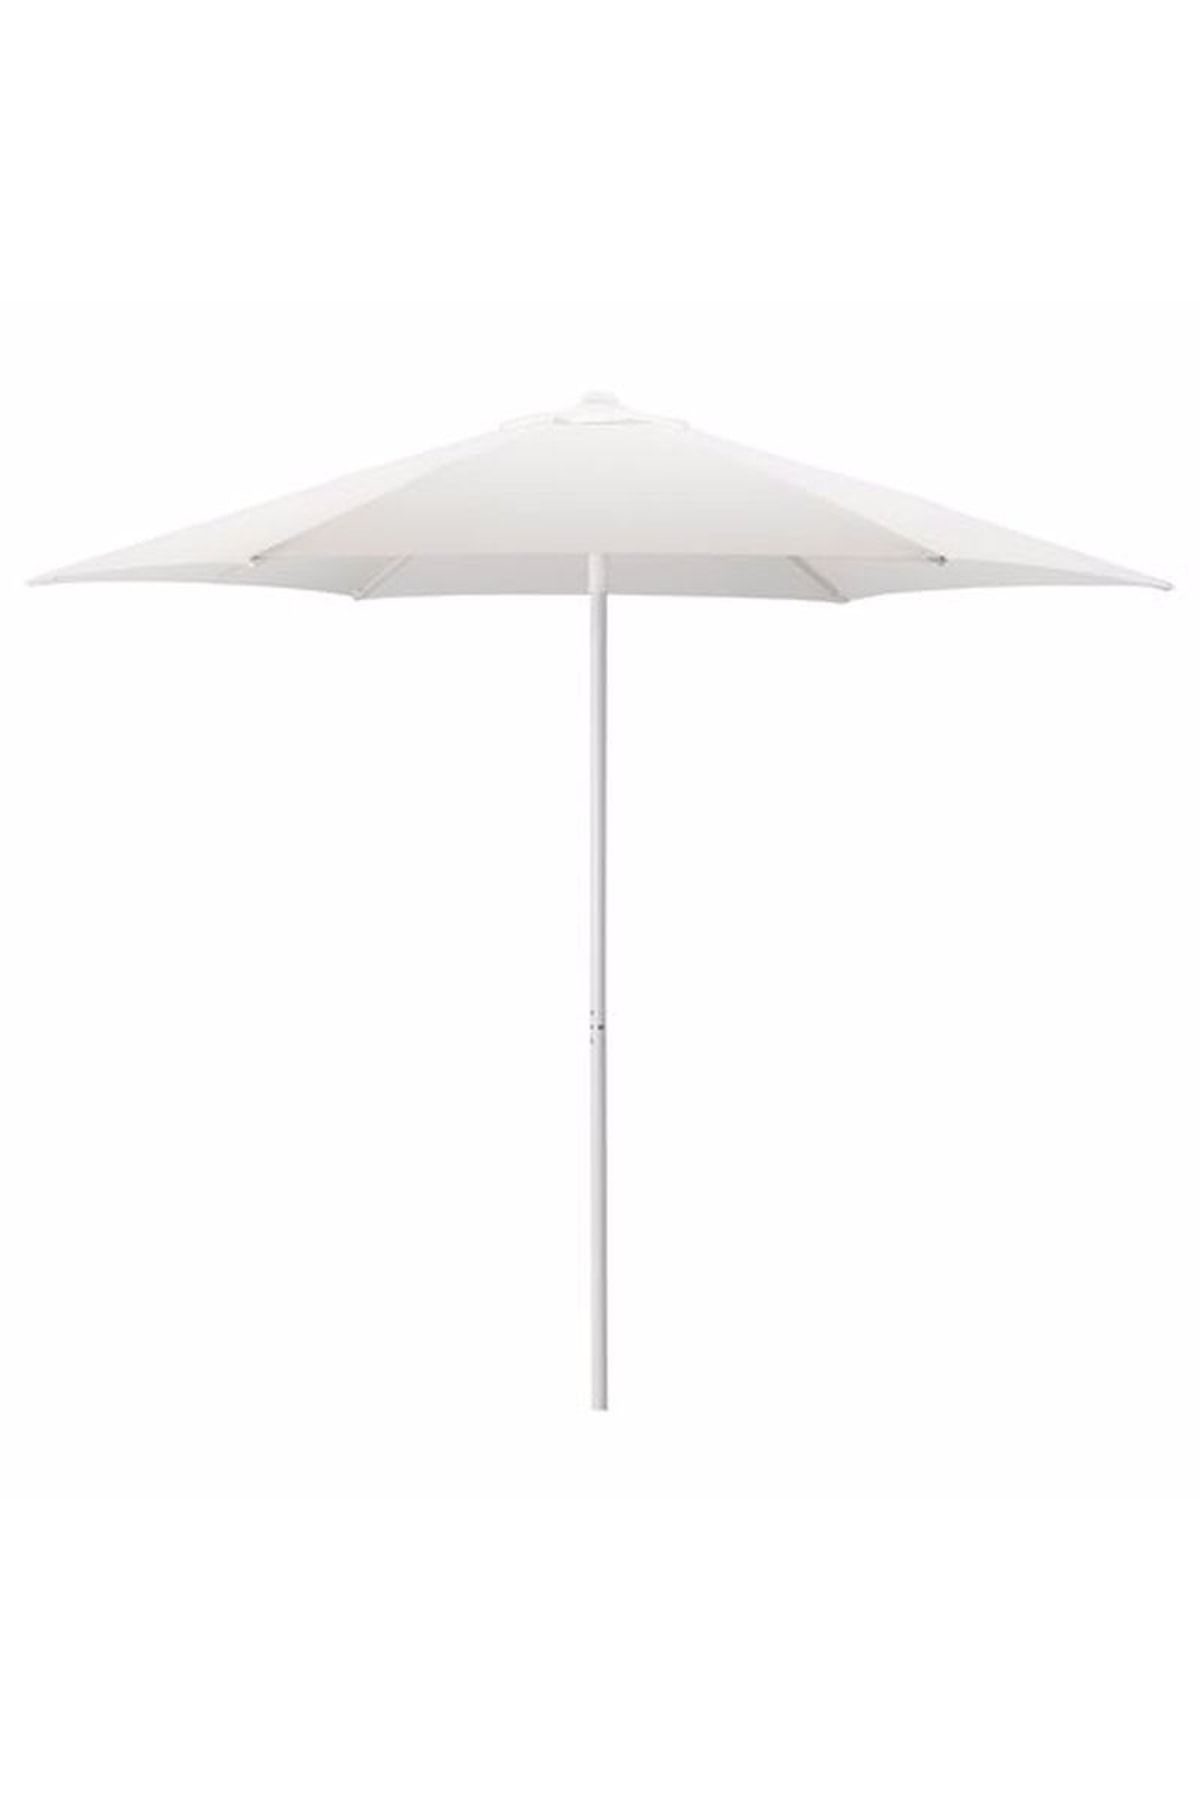 IKEA Högön Güneş Şemsiyesi, Beyaz